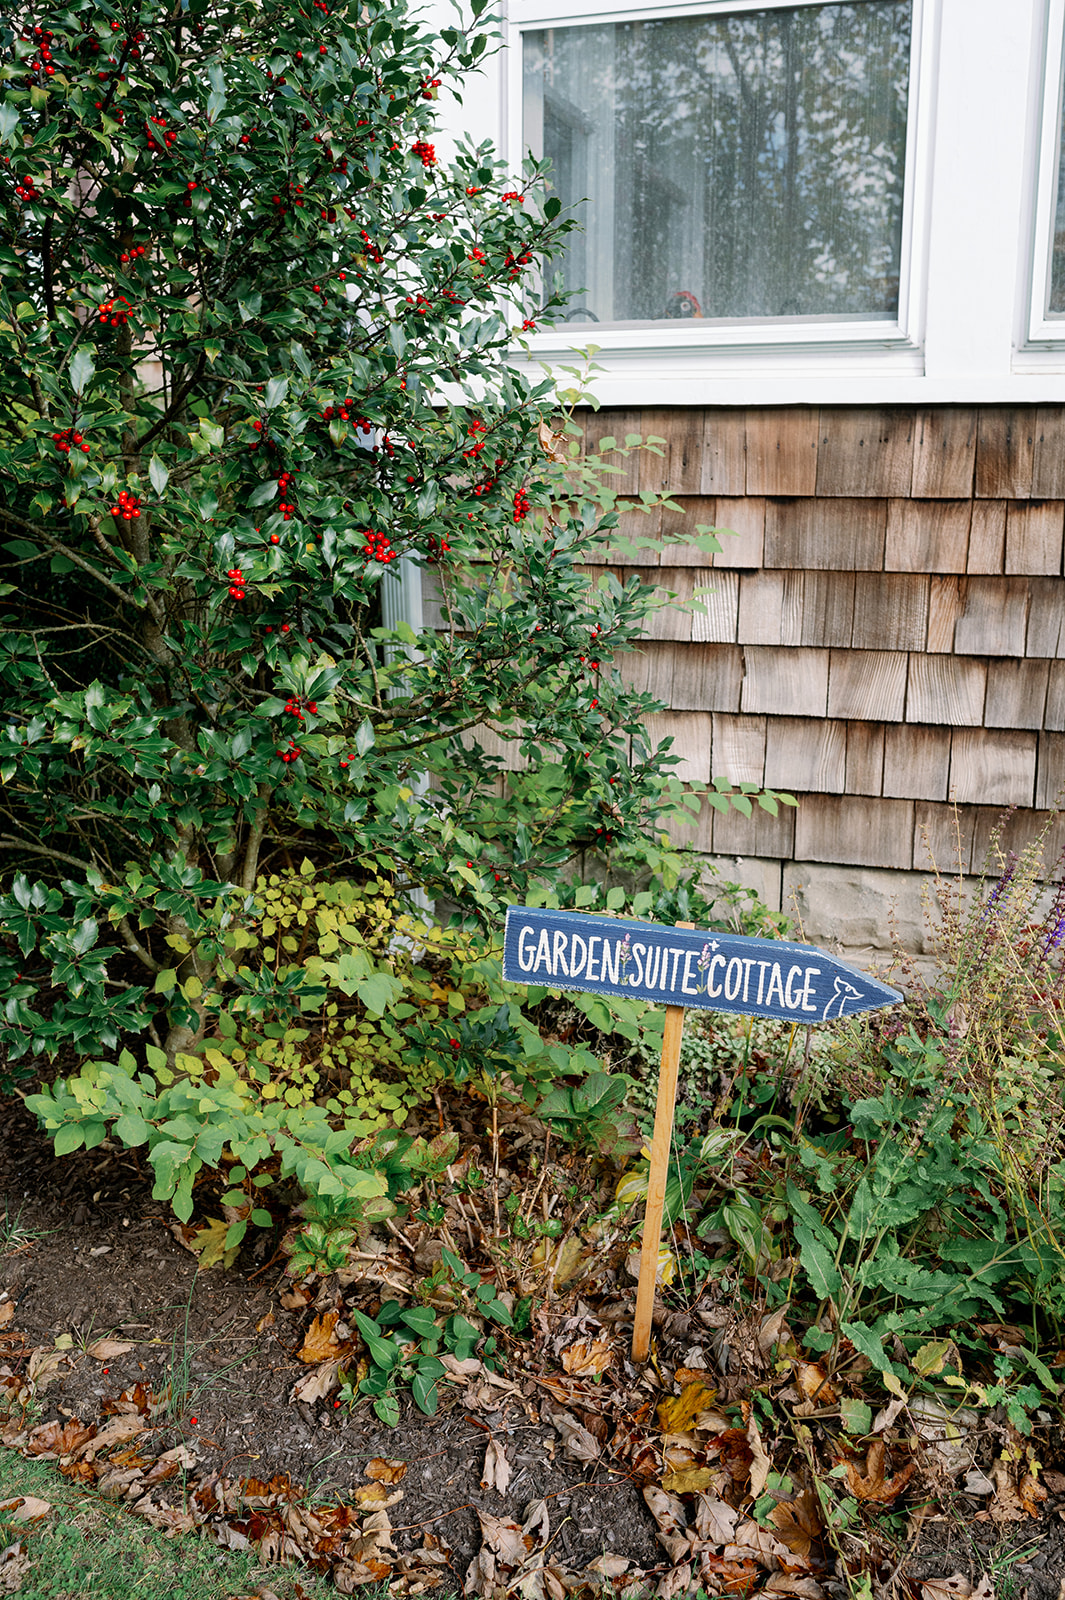 Garden Suite Cottage sign at The Bellport Inn.